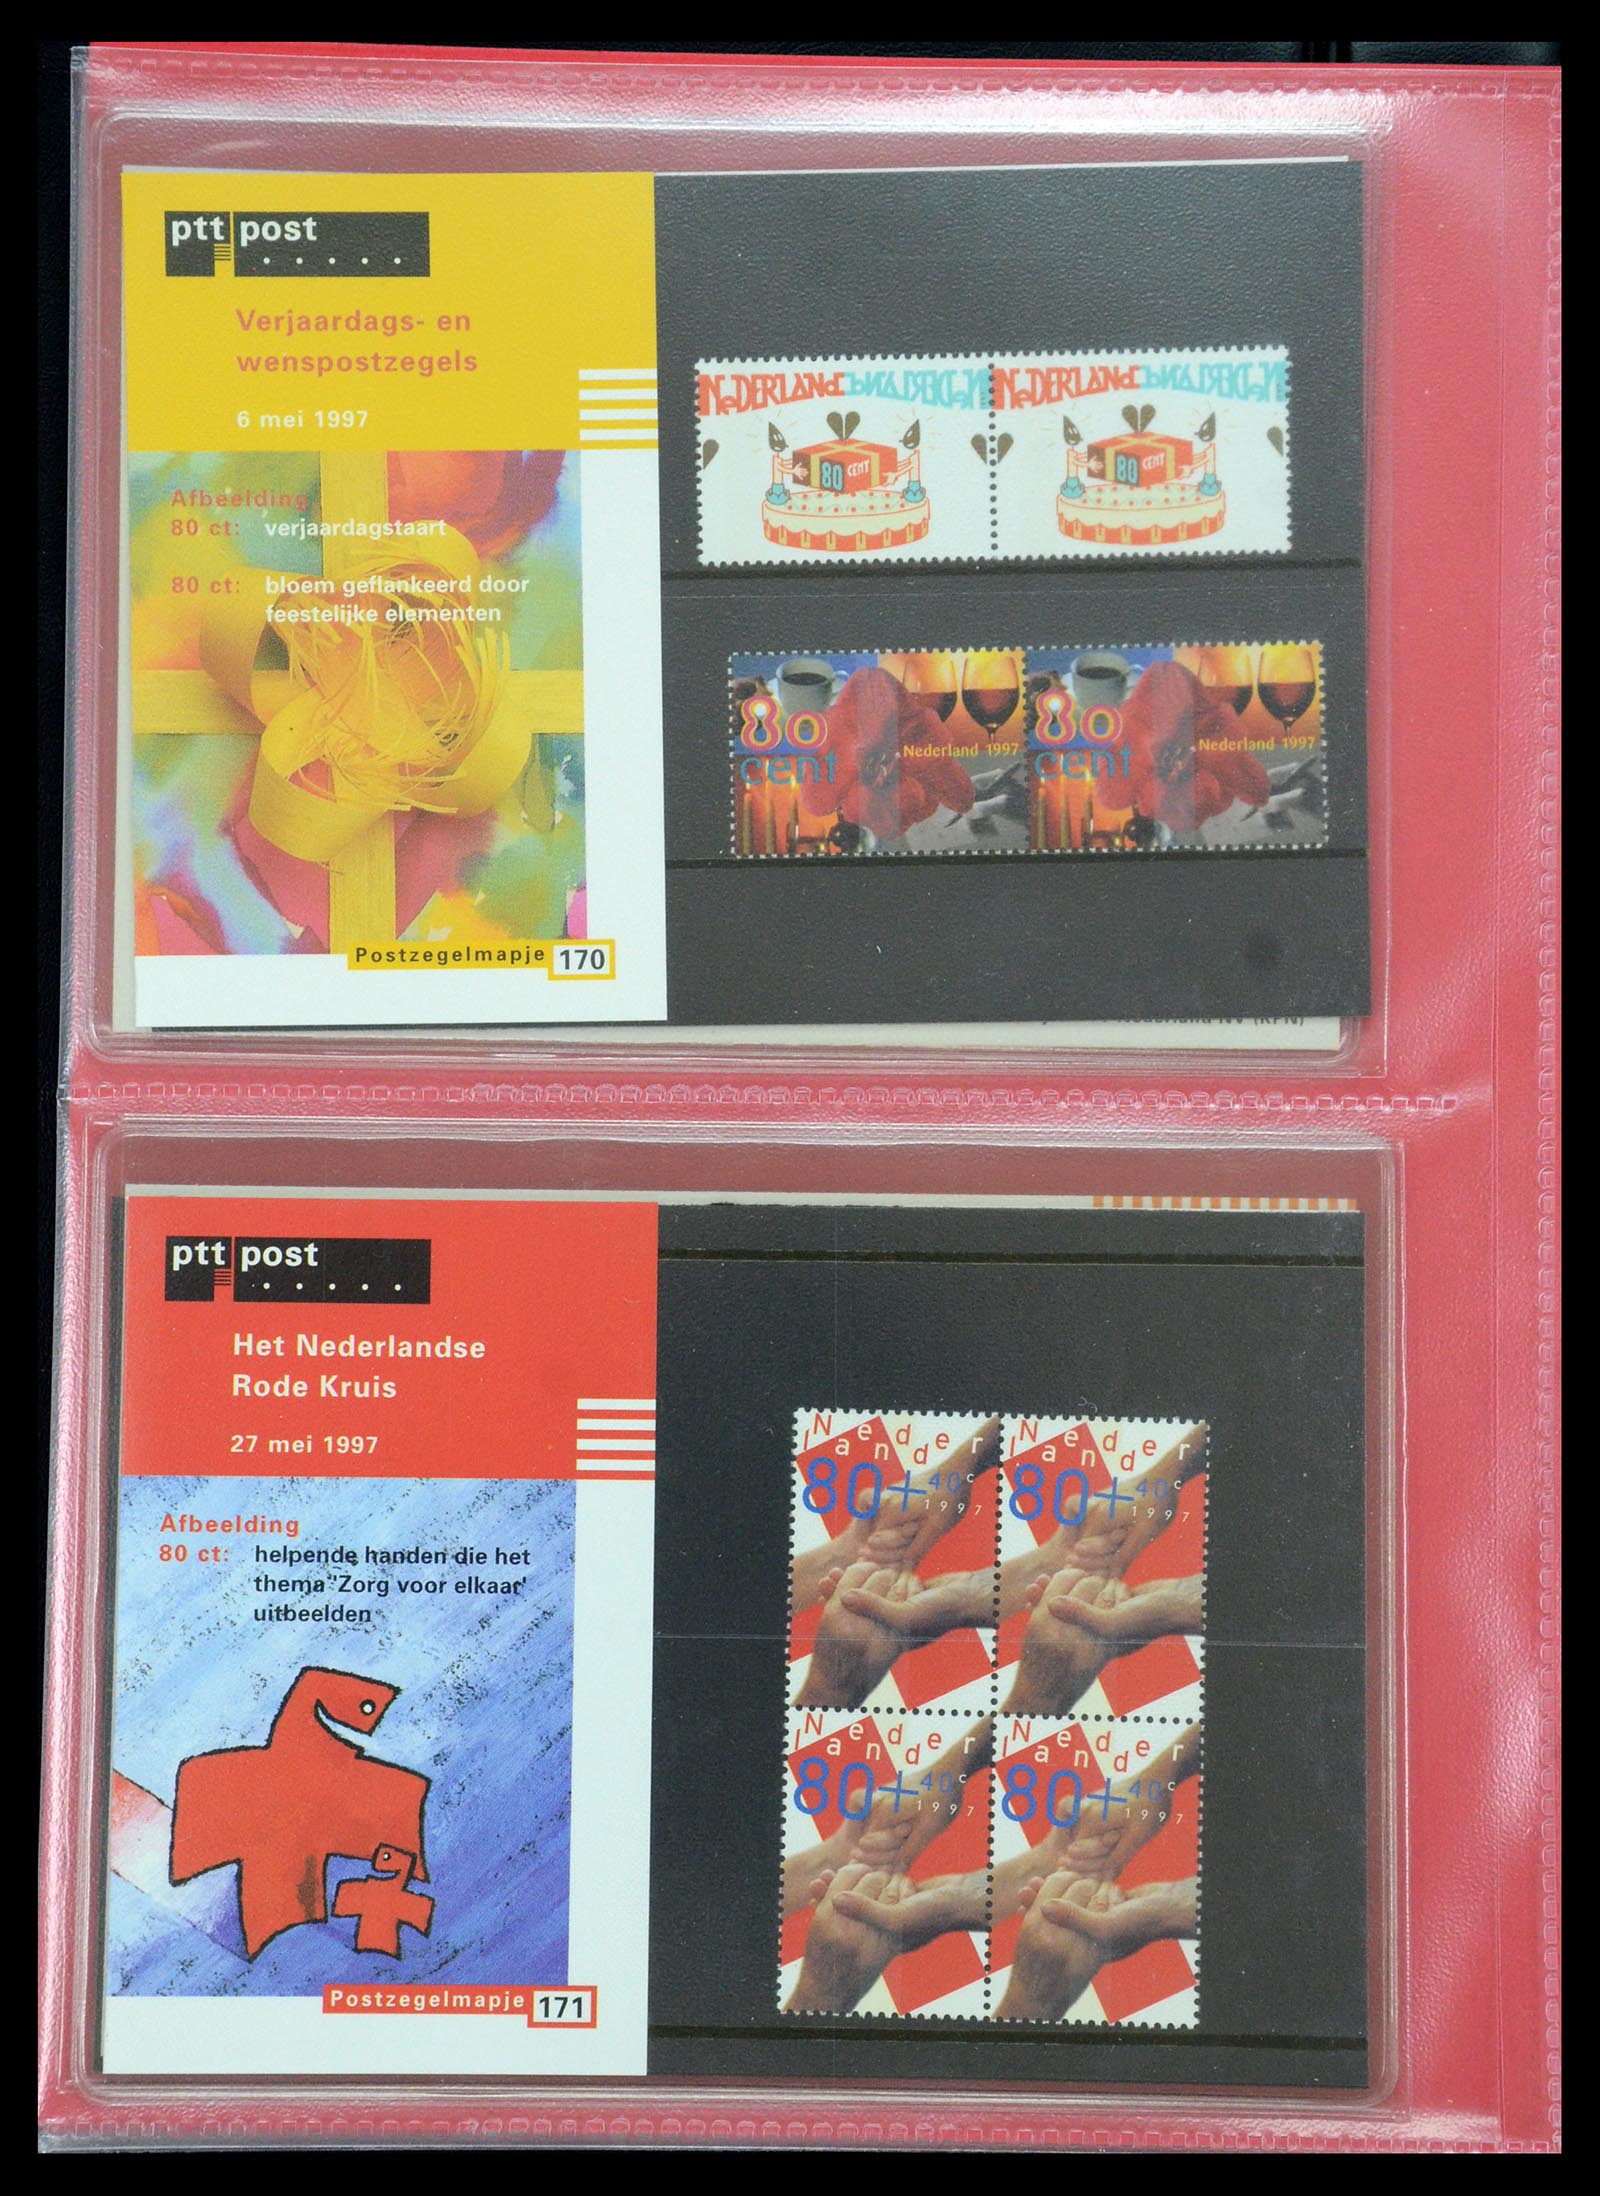 35692 088 - Stamp Collection 35692 Netherlands presentation packs 1982-2021!!